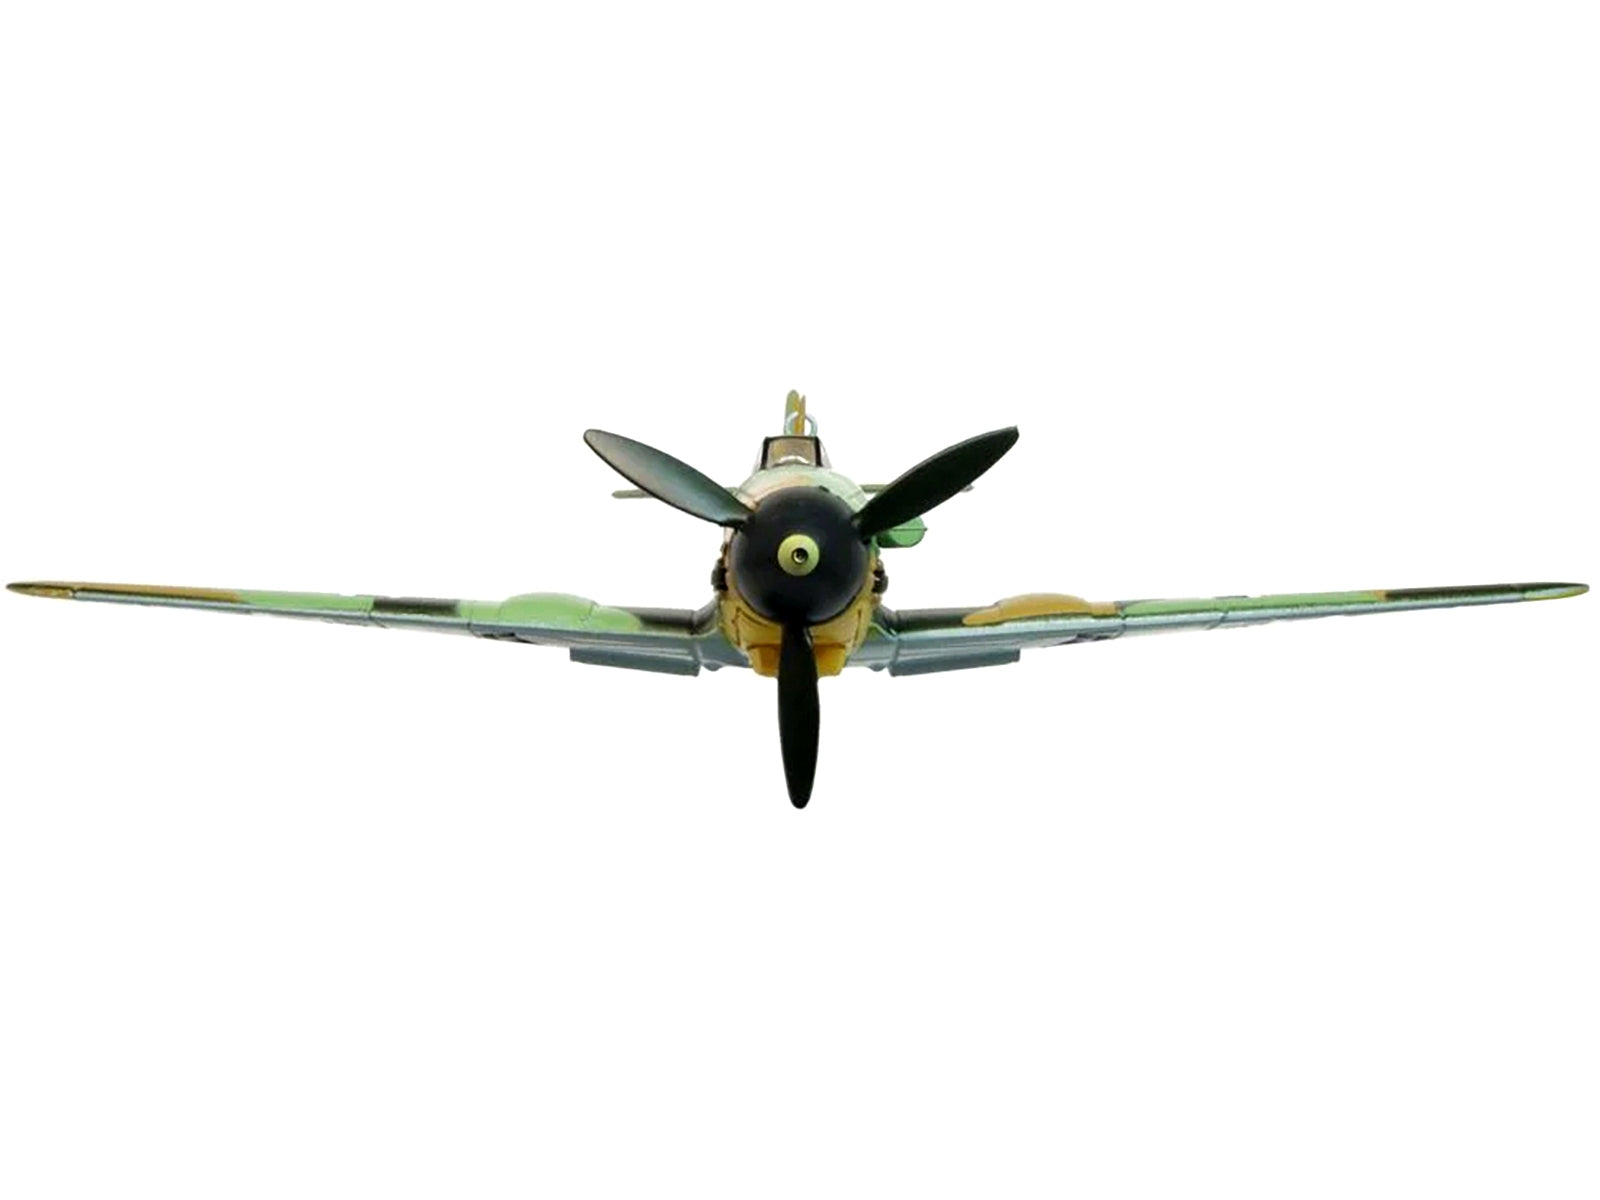 Messerschmitt Bf 109F-4 Fighter Plane "Ofw. Eberhard von Boremski 9/JG3 Eastern Front" (1942) "Oxford Aviation" Series 1/72 Diecast Model Airplane by Oxford Diecast